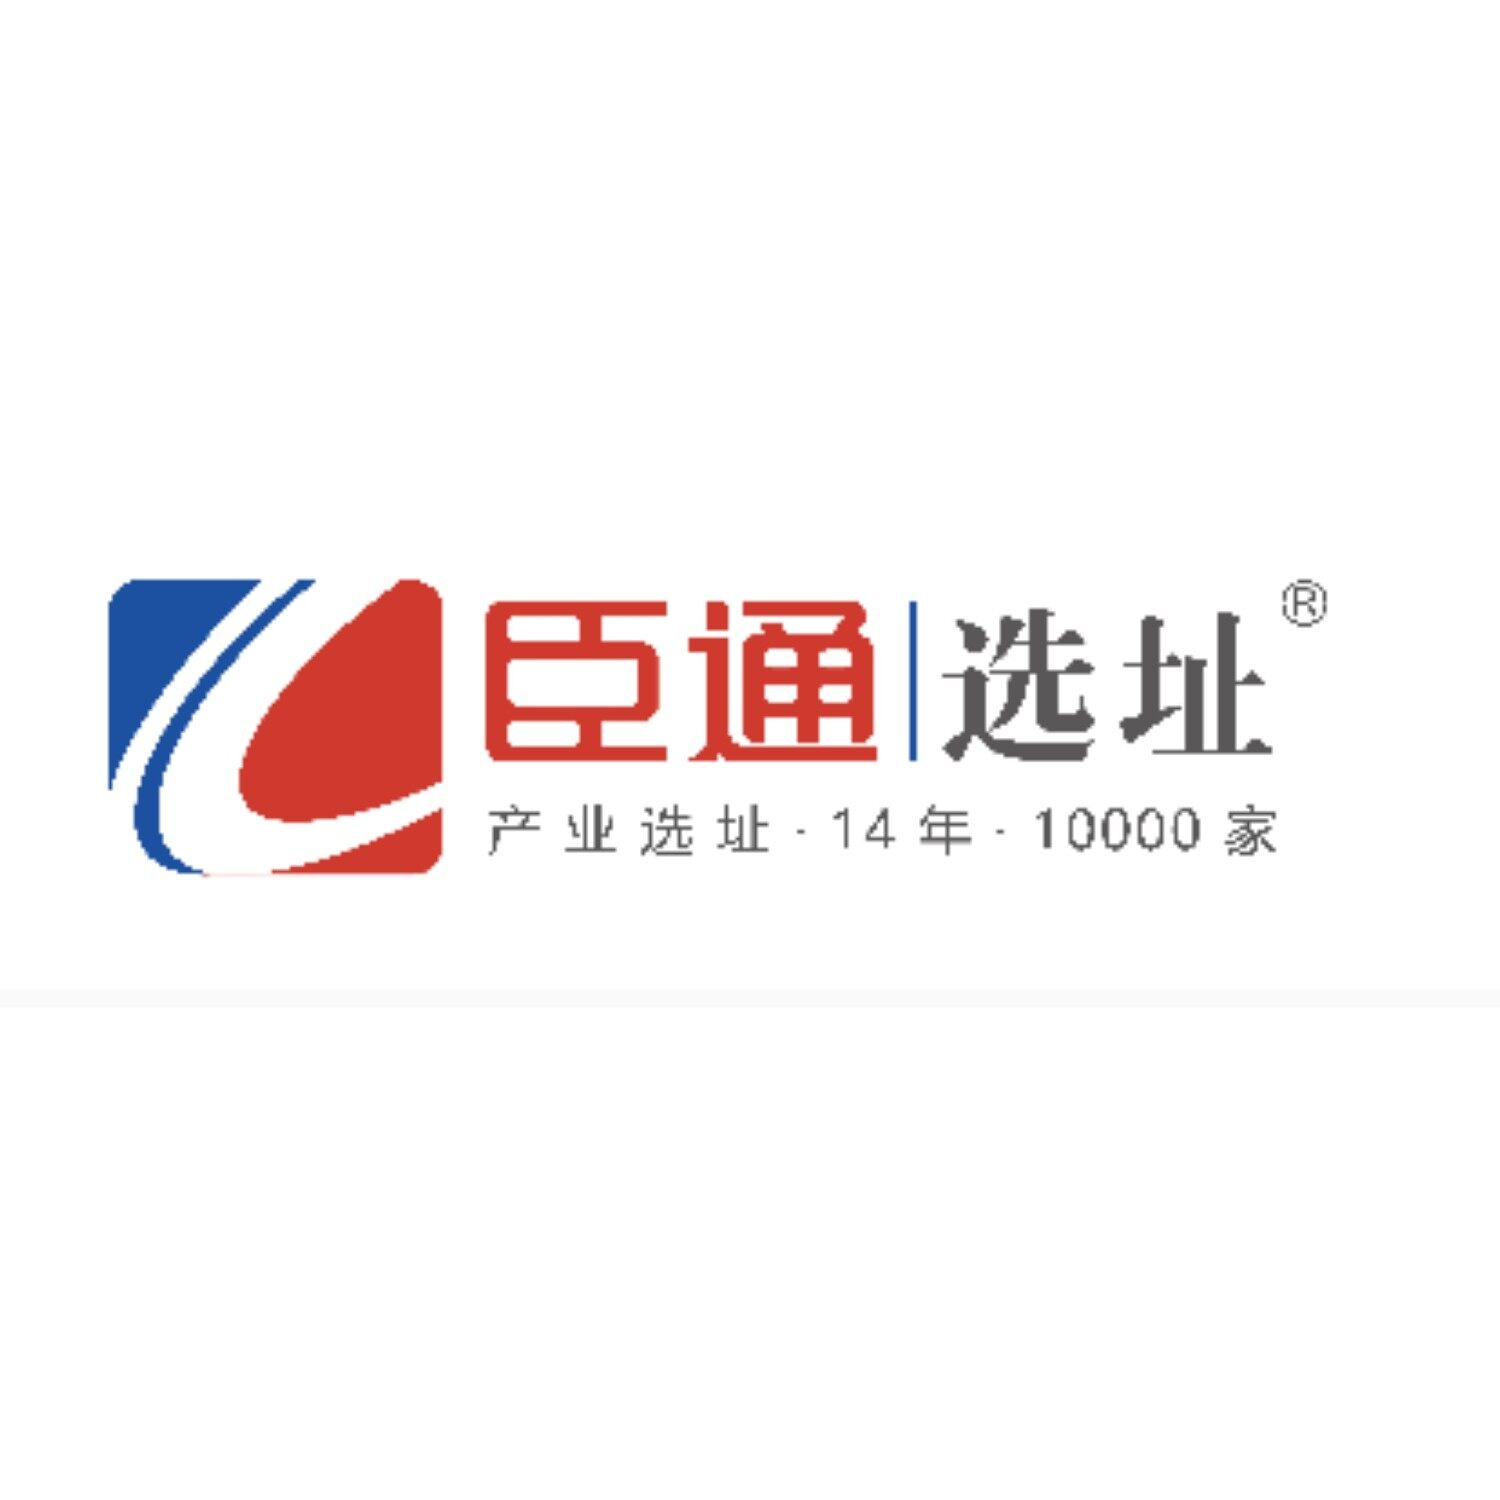 广州臣通选址科技服务有限公司logo